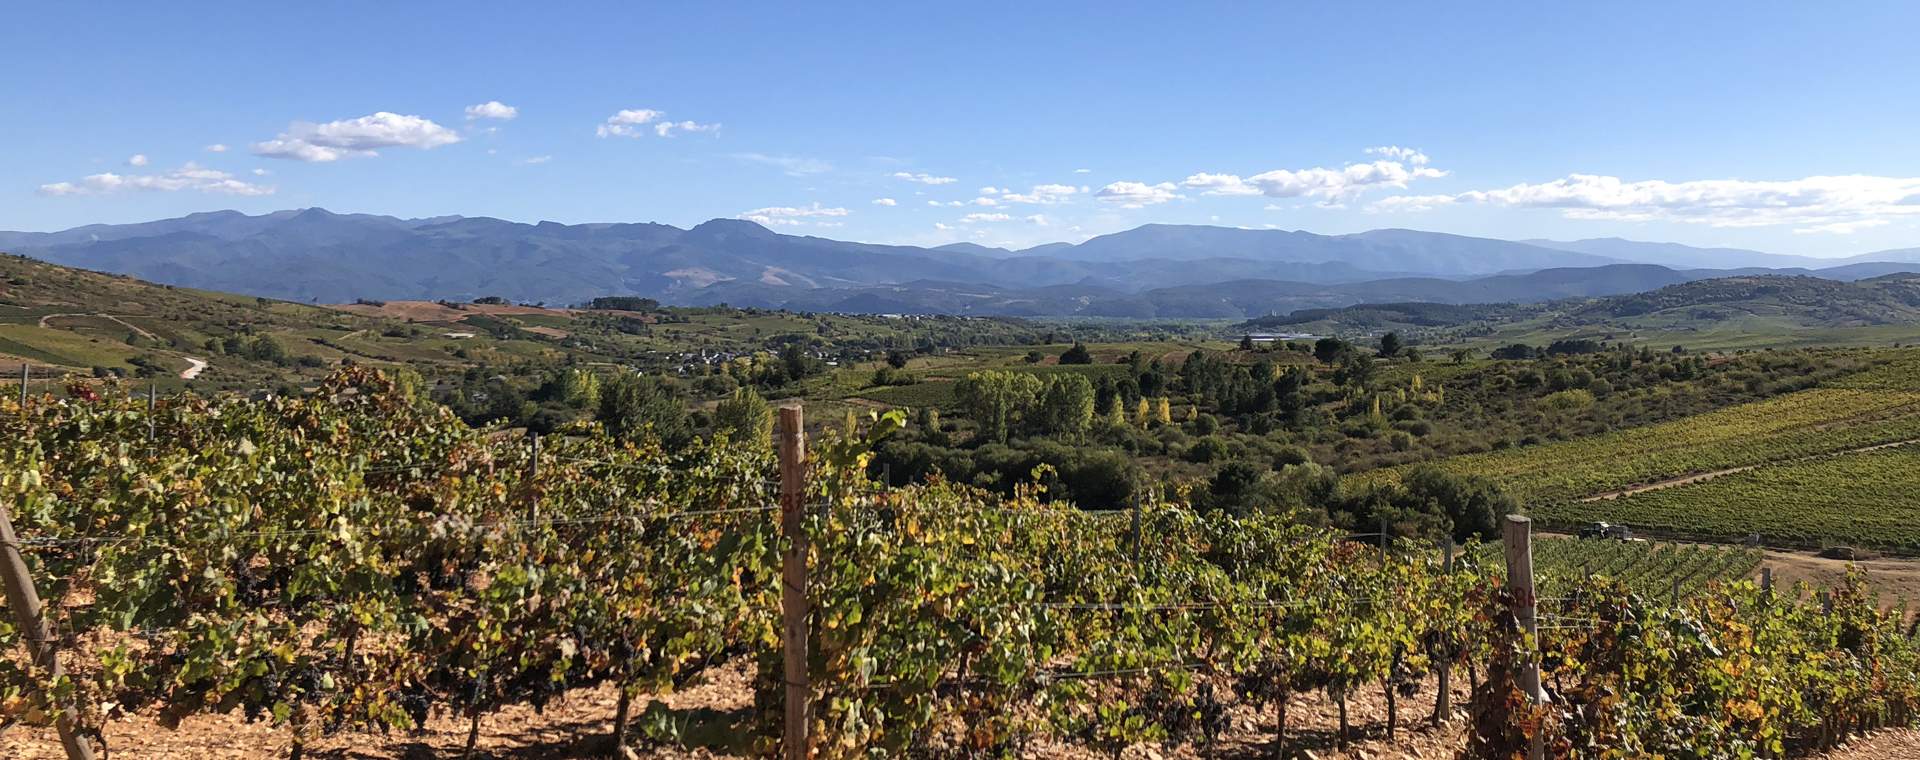 Weinberge im Gebiet Bierzo, Spanien